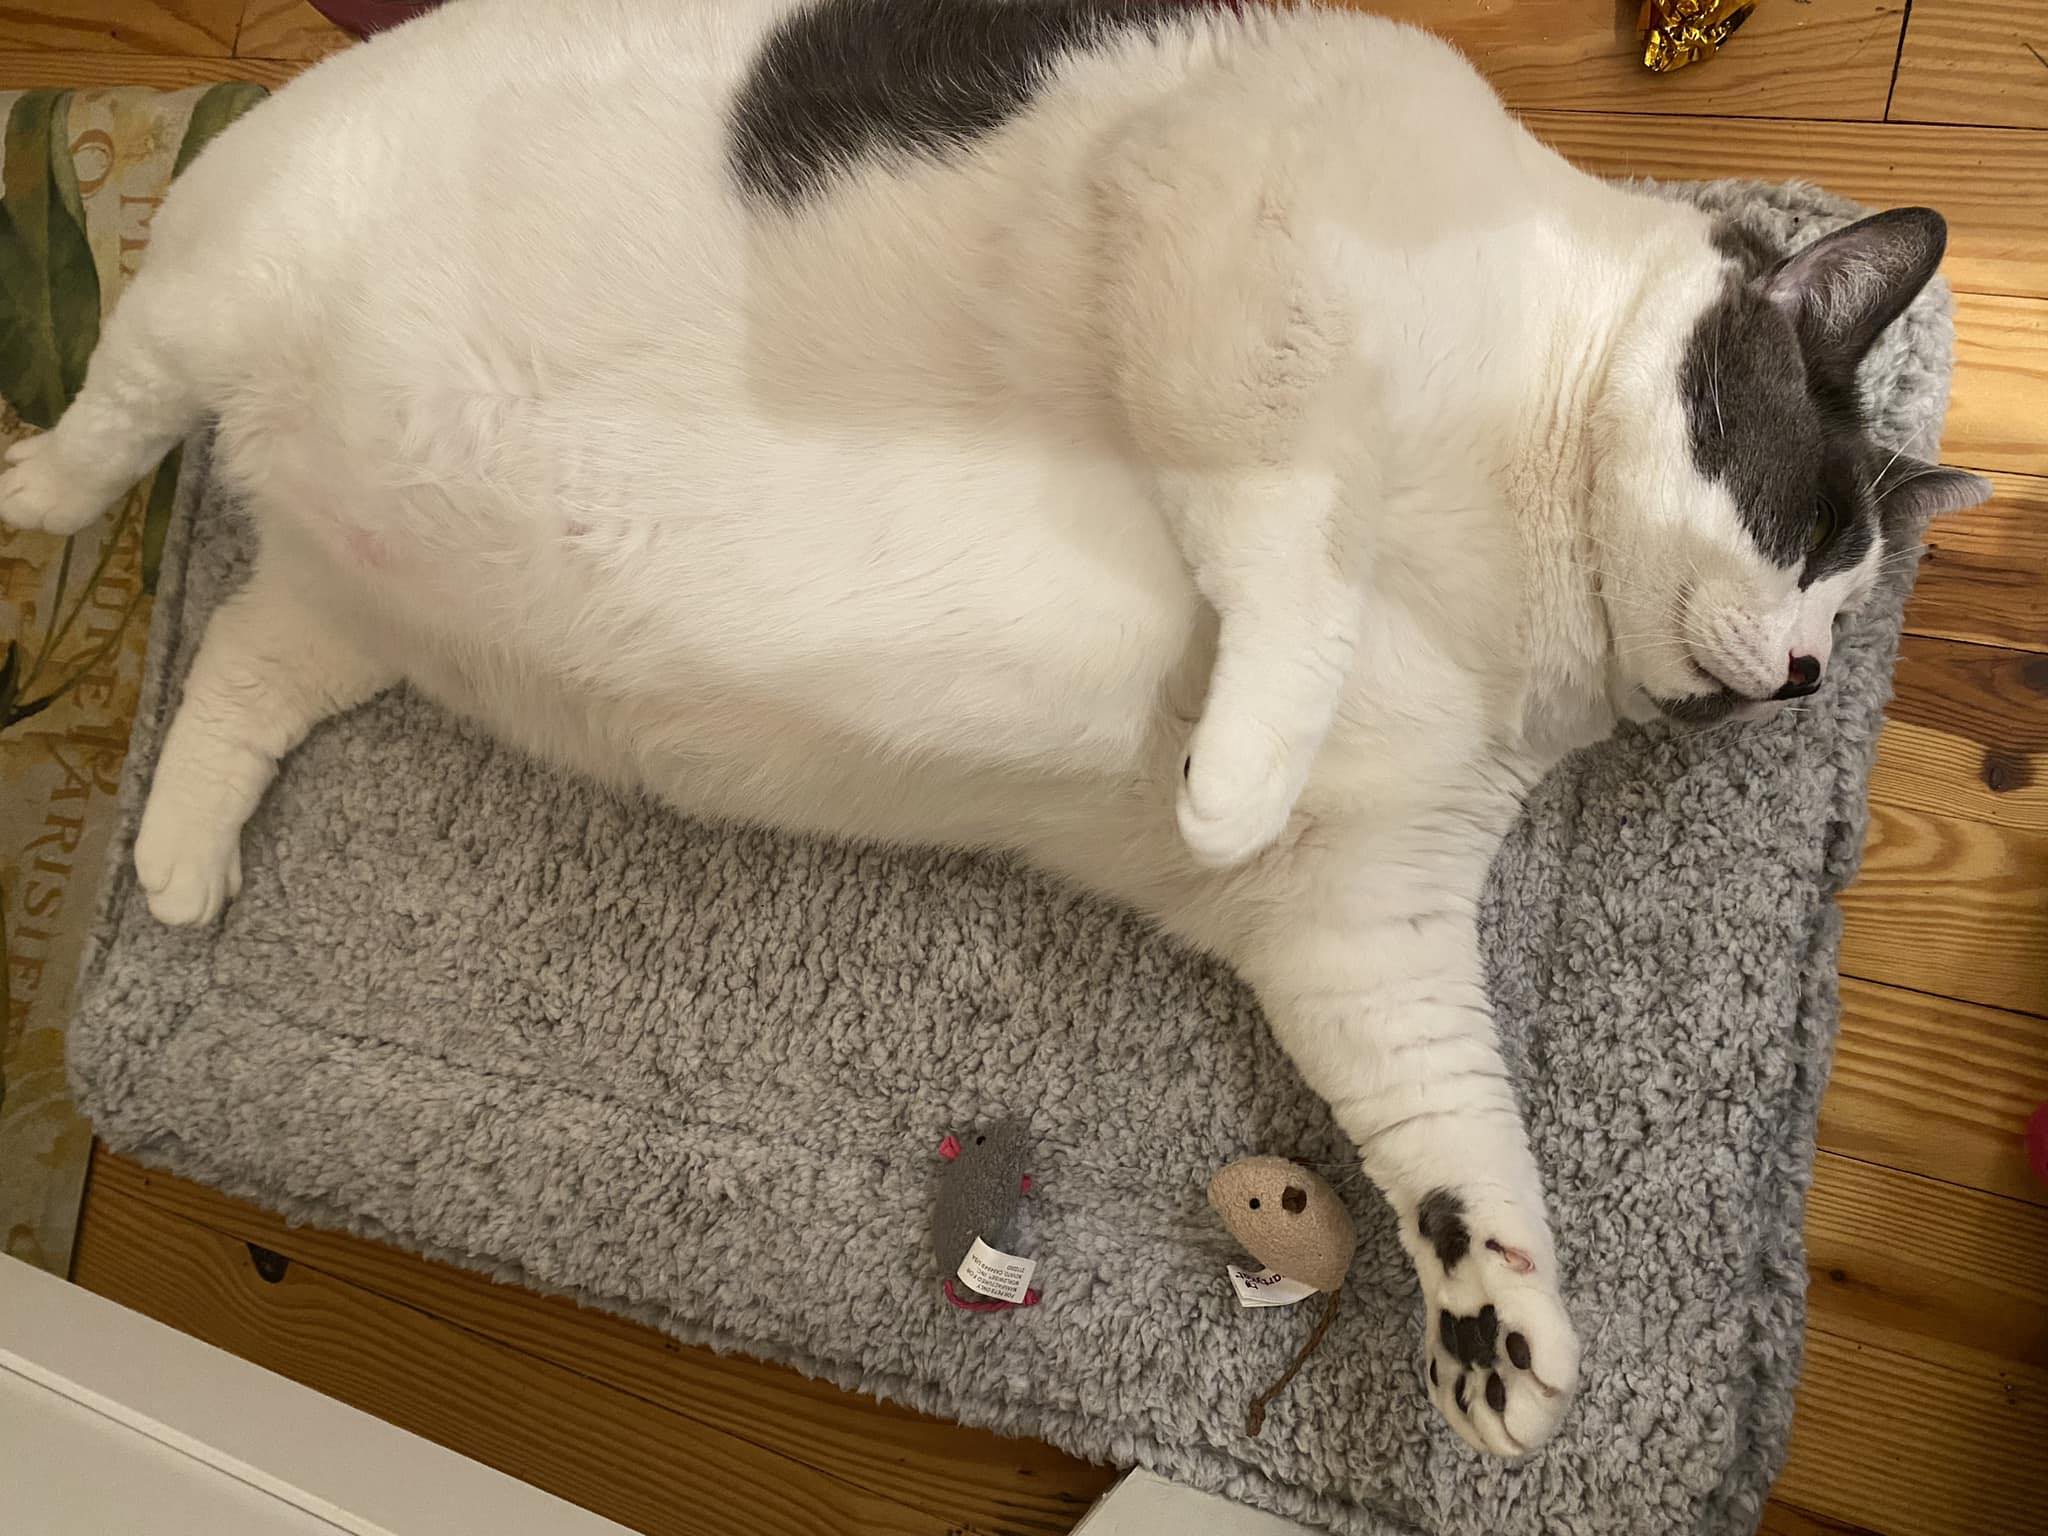 Gato gigante de quase 12 kg faz sucesso nas redes sociais 